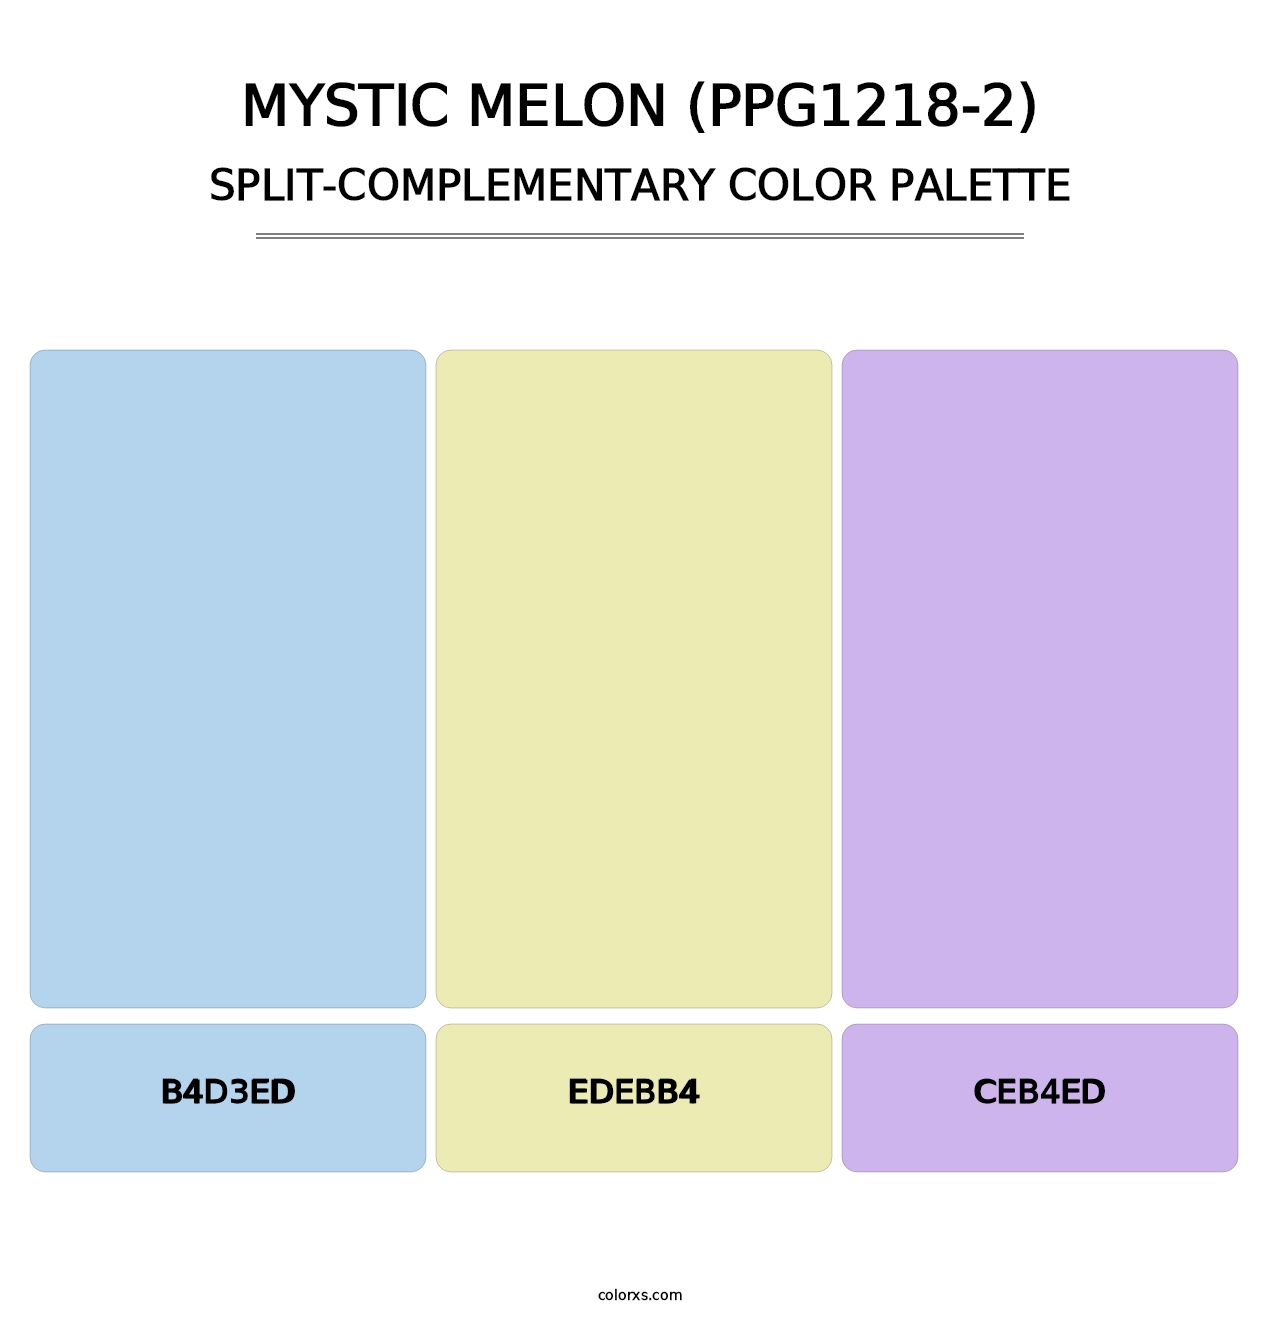 Mystic Melon (PPG1218-2) - Split-Complementary Color Palette